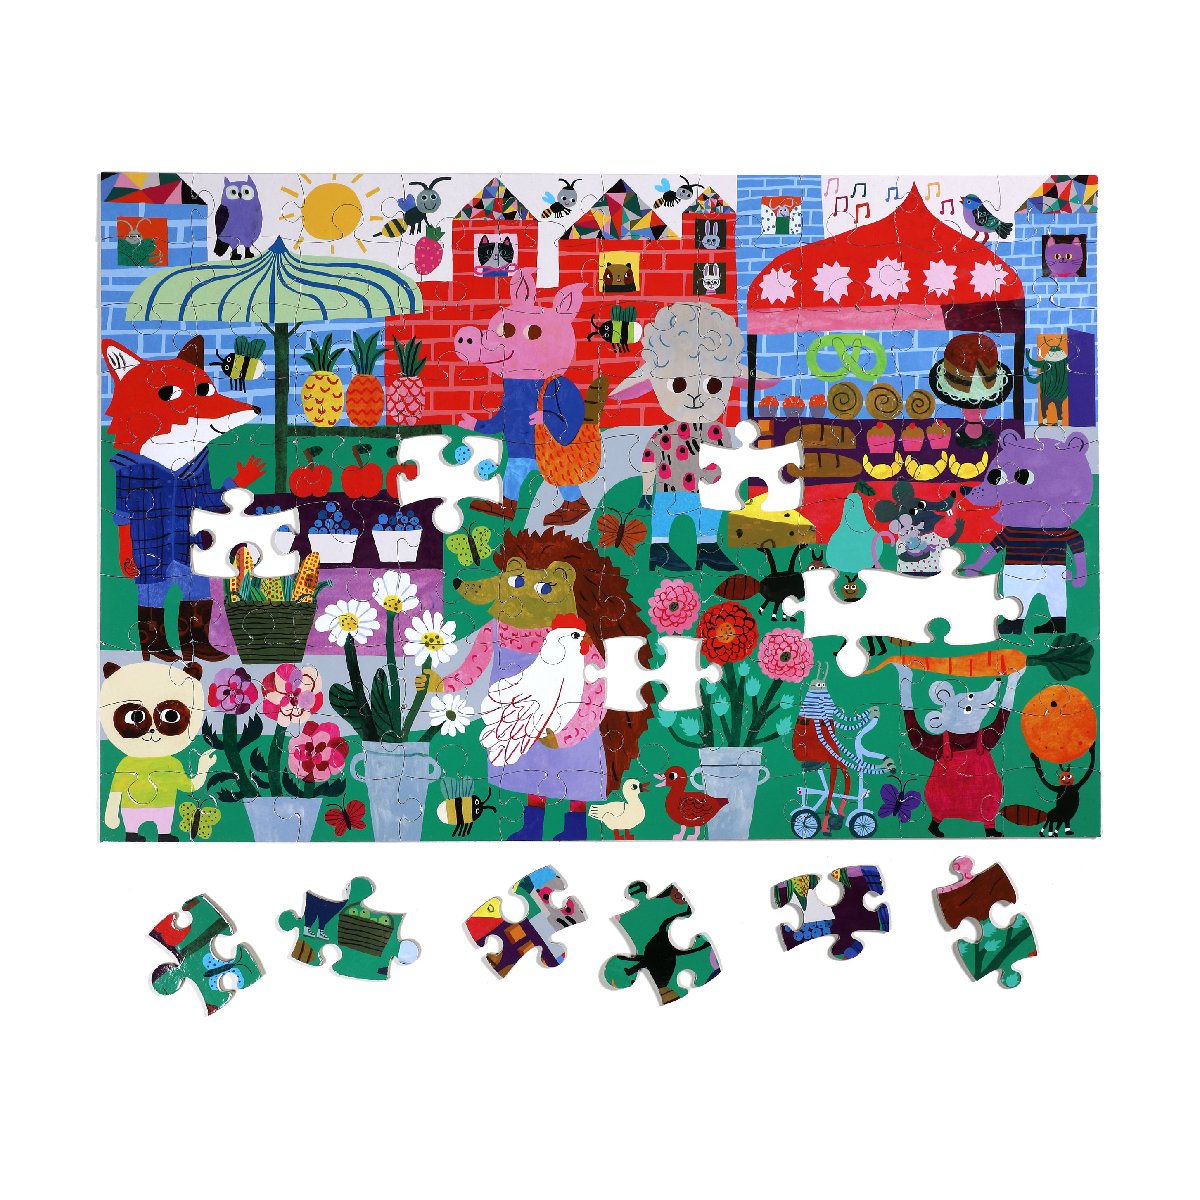 Eeboo | 100 piece puzzle | Green Market - complete